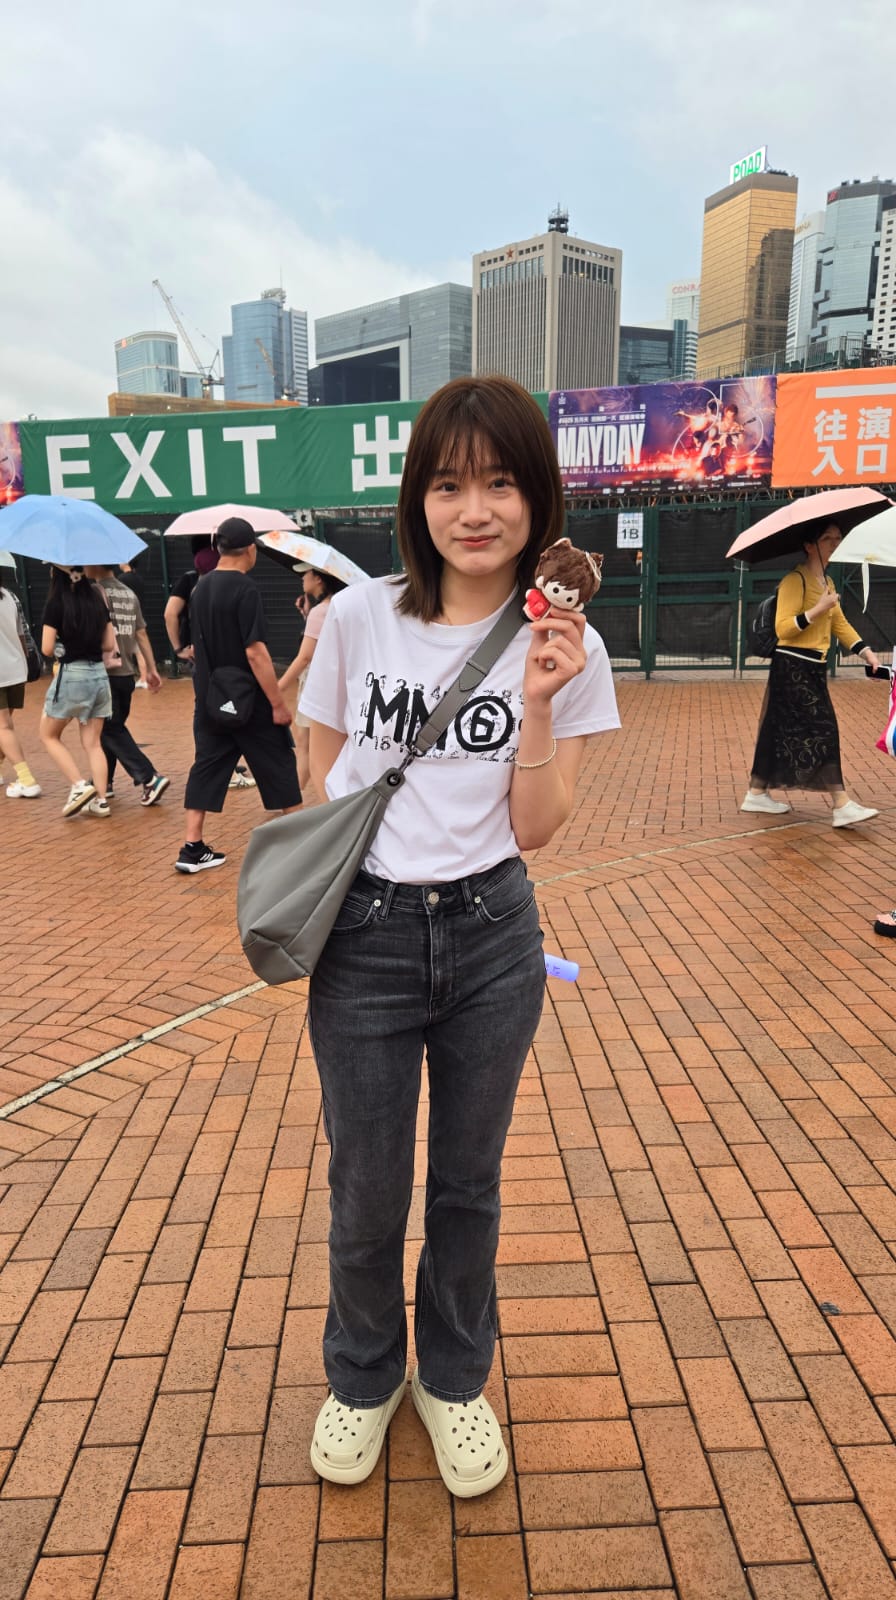 來自上海的陳小姐特地來港欣賞五月天演唱會，她表示只來港3天，在演唱會前2小時才收到取消的消息。